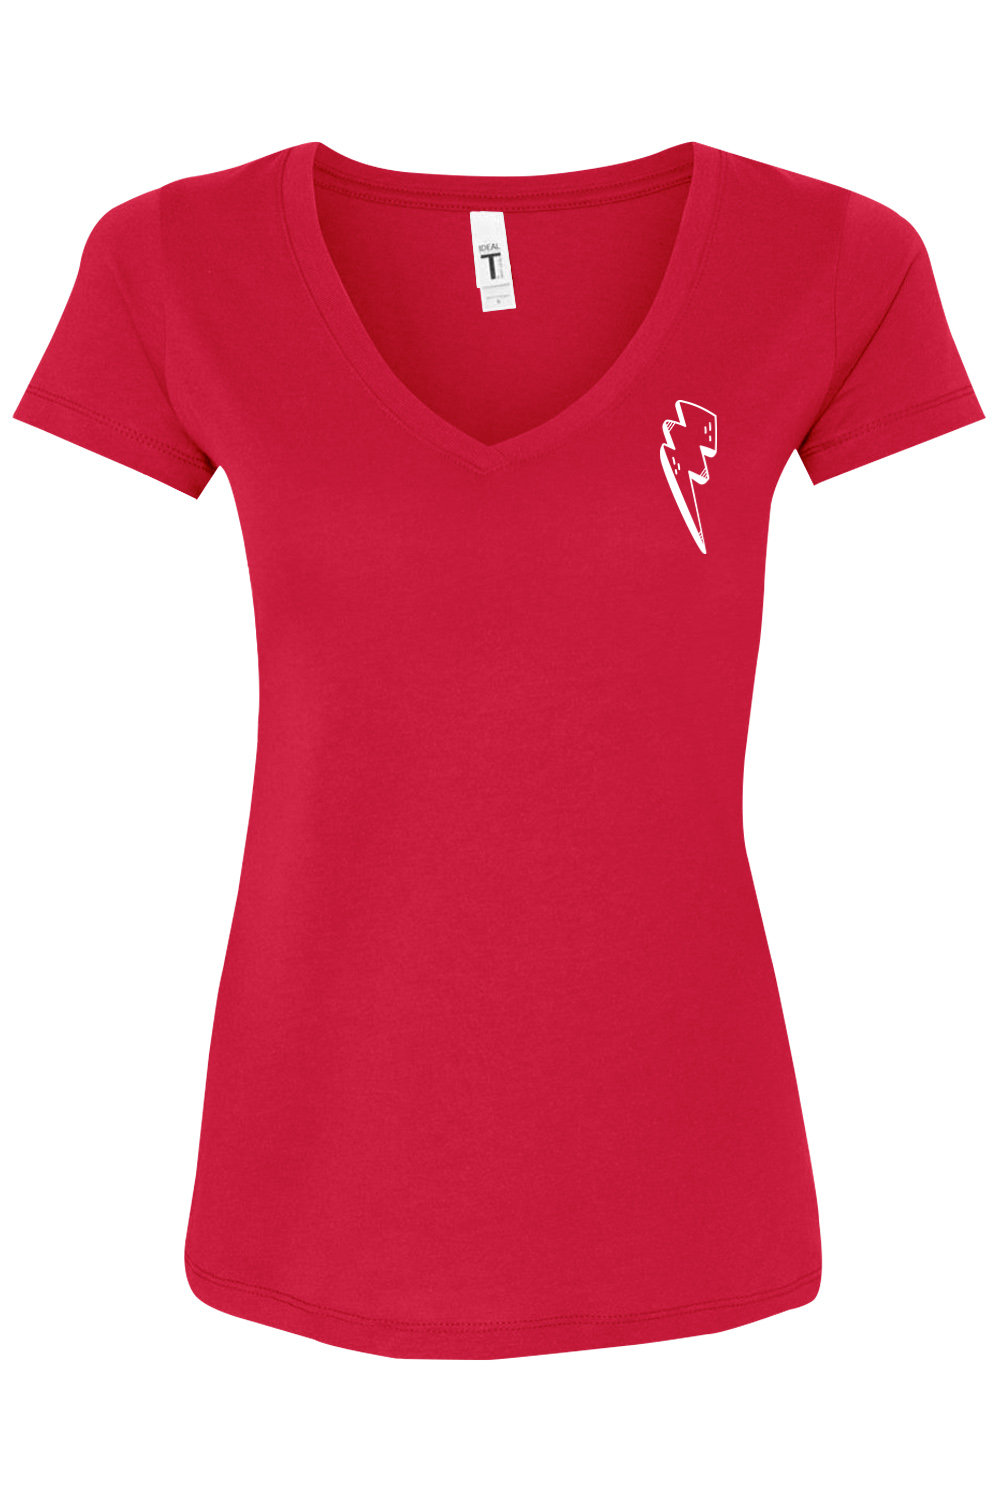 REV Burger Women's Red V-Neck T-Shirt